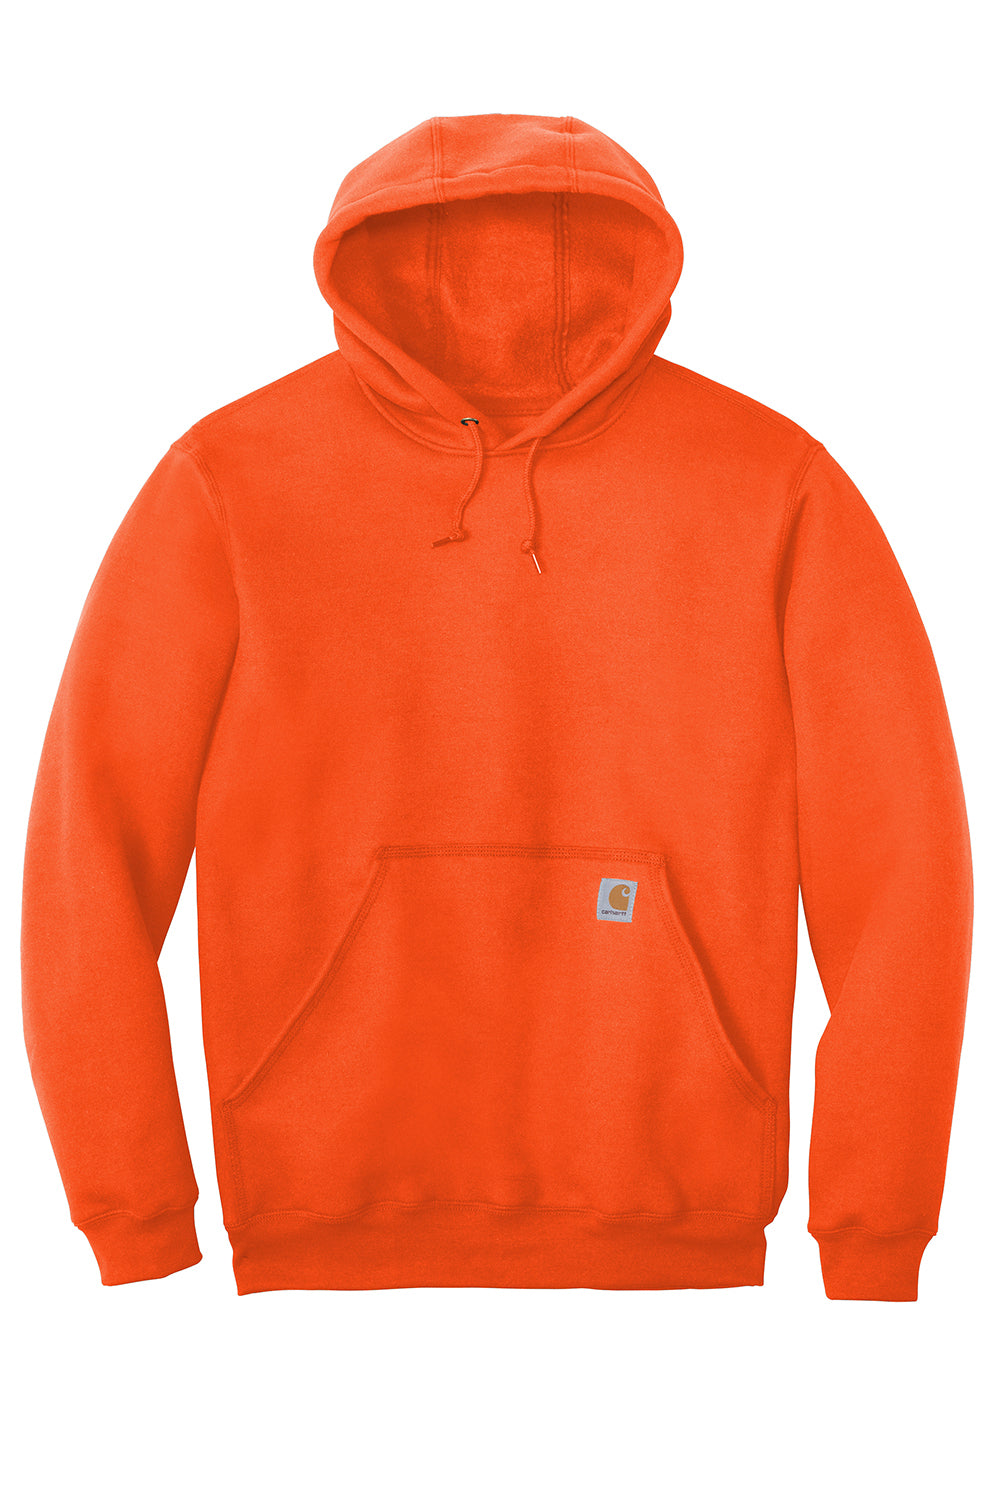 Carhartt CTK121/CTTK121 Mens Hooded Sweatshirt Hoodie Brite Orange Flat Front